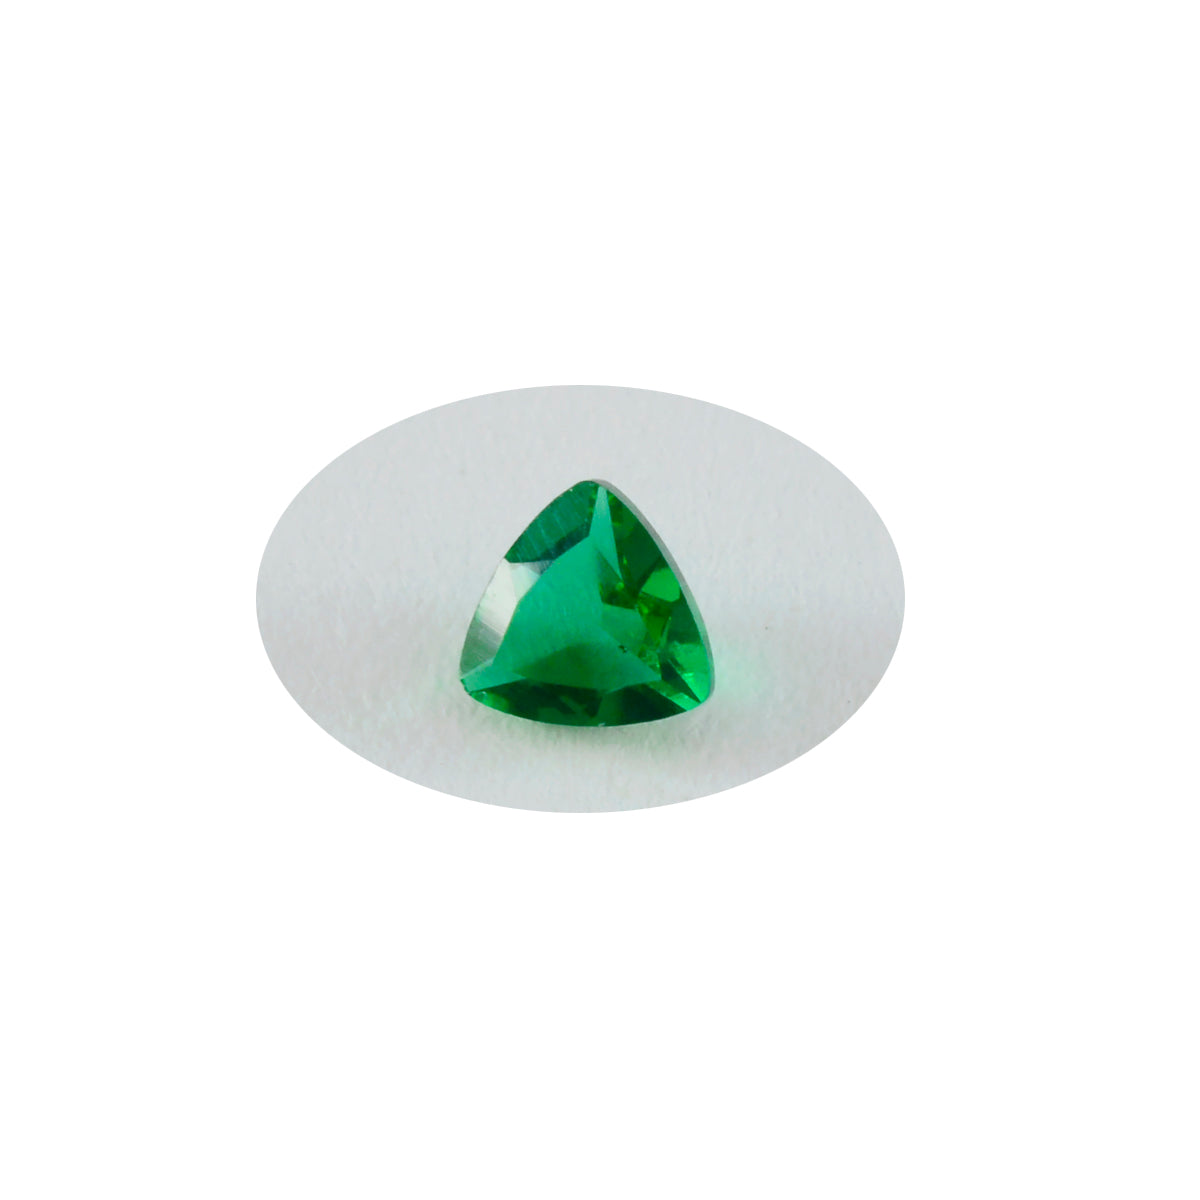 riyogems 1шт зеленый изумруд cz ограненный 11x11 мм форма триллиона драгоценный камень высокого качества